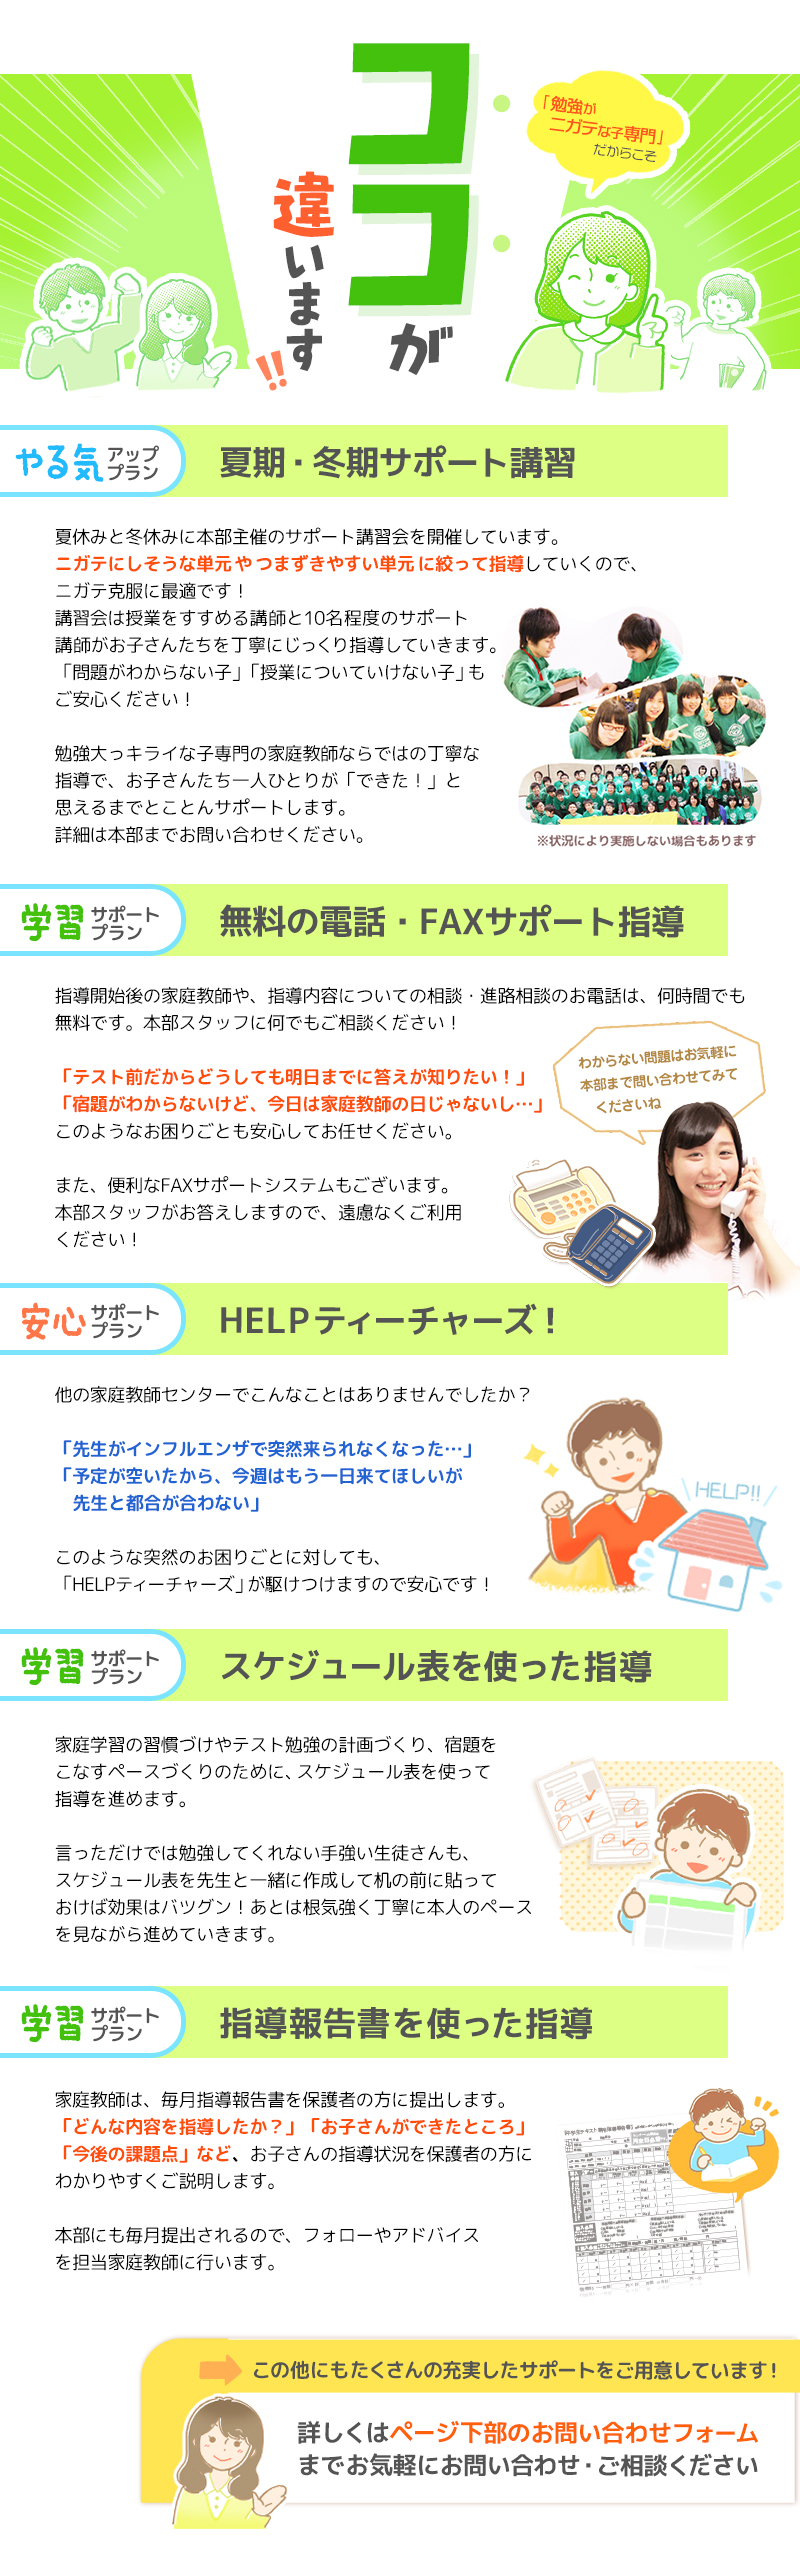 公式 福井市の家庭教師 塾より安く中学生や小学生の勉強が苦手な子におすすめ